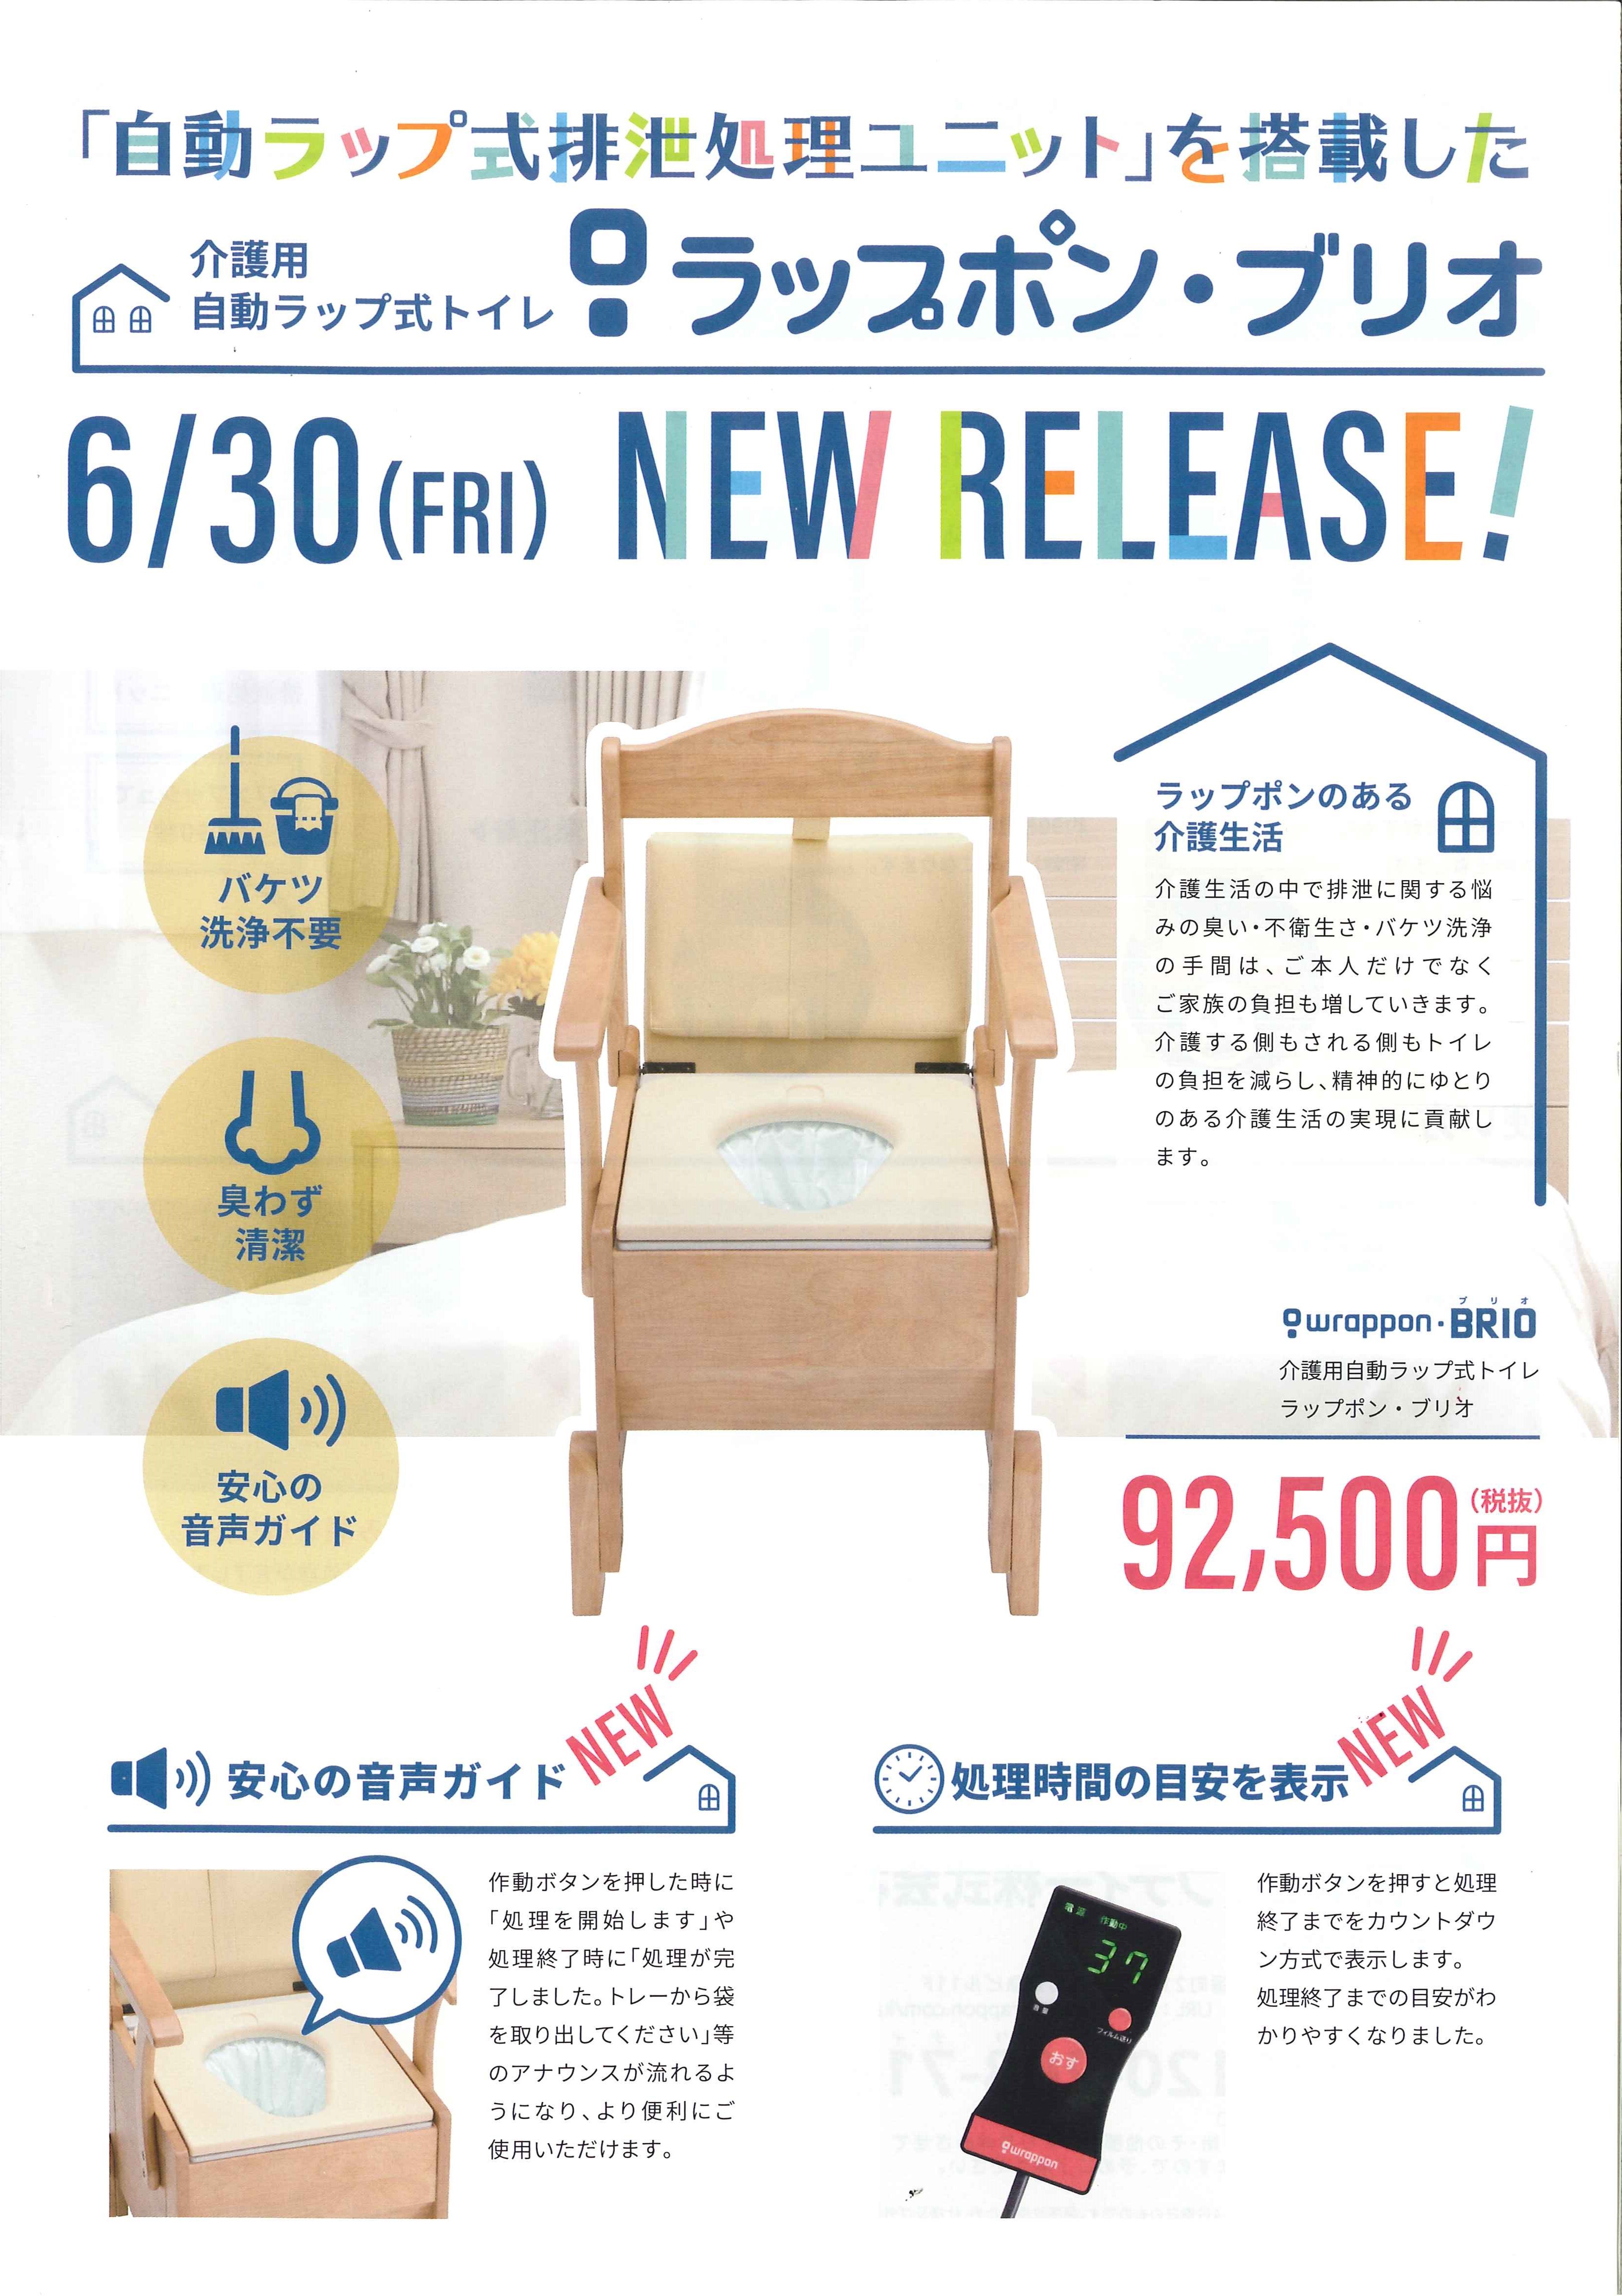 新製品『ラップポン・ブリオ』６月３０日発売開始: 事務局長のブログ